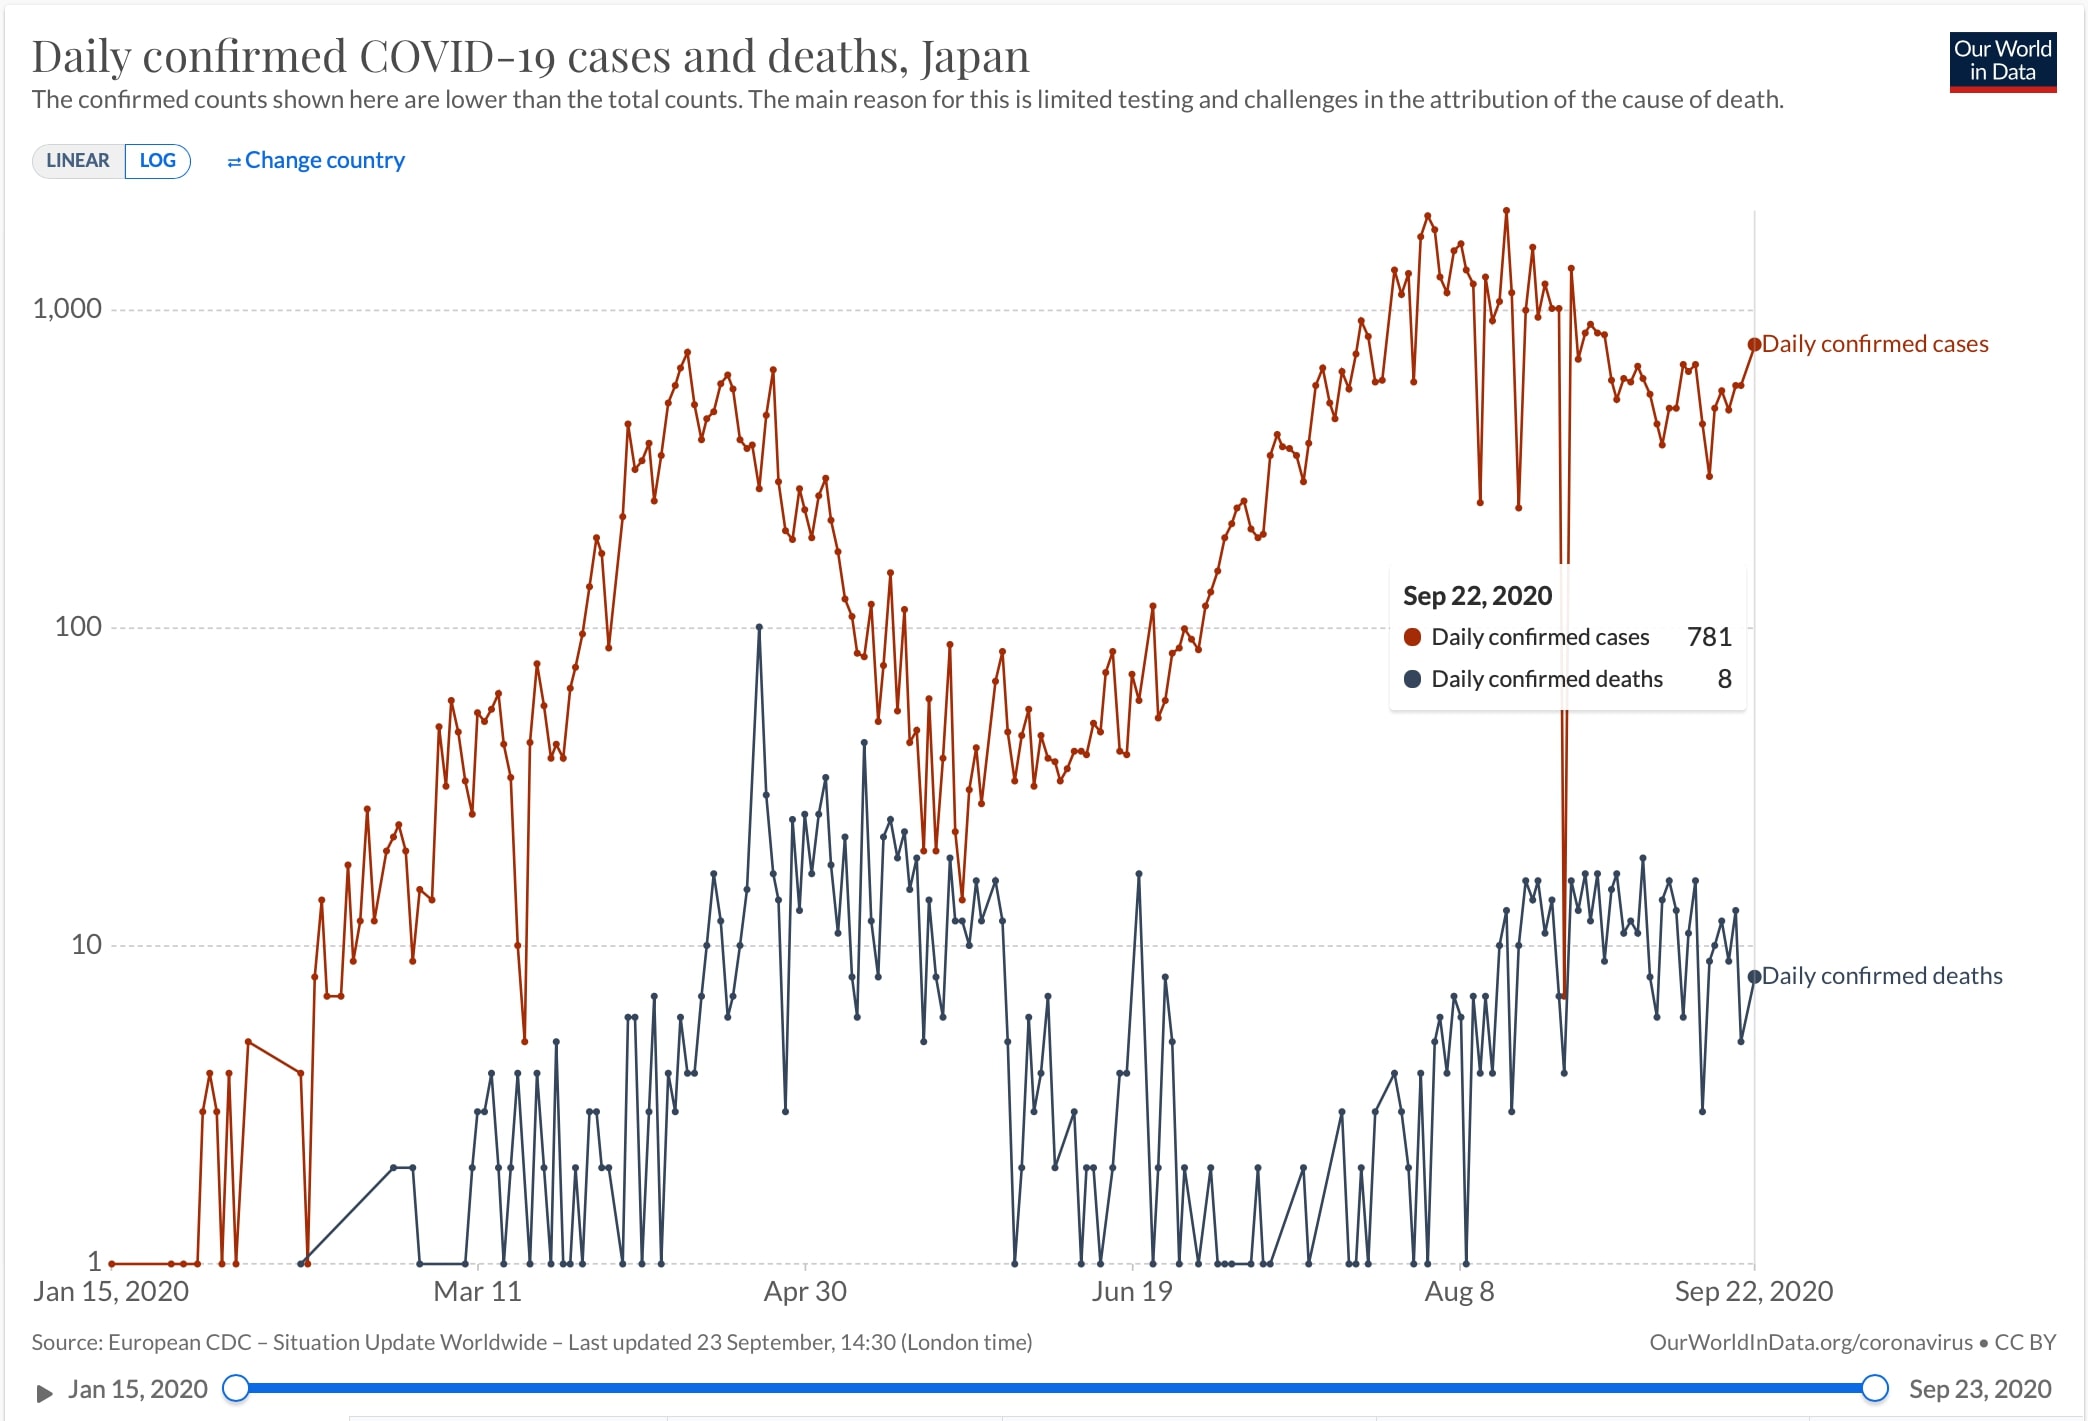 日本におけるCOVID-19による日毎死者数と日毎新規感染者数(片対数)